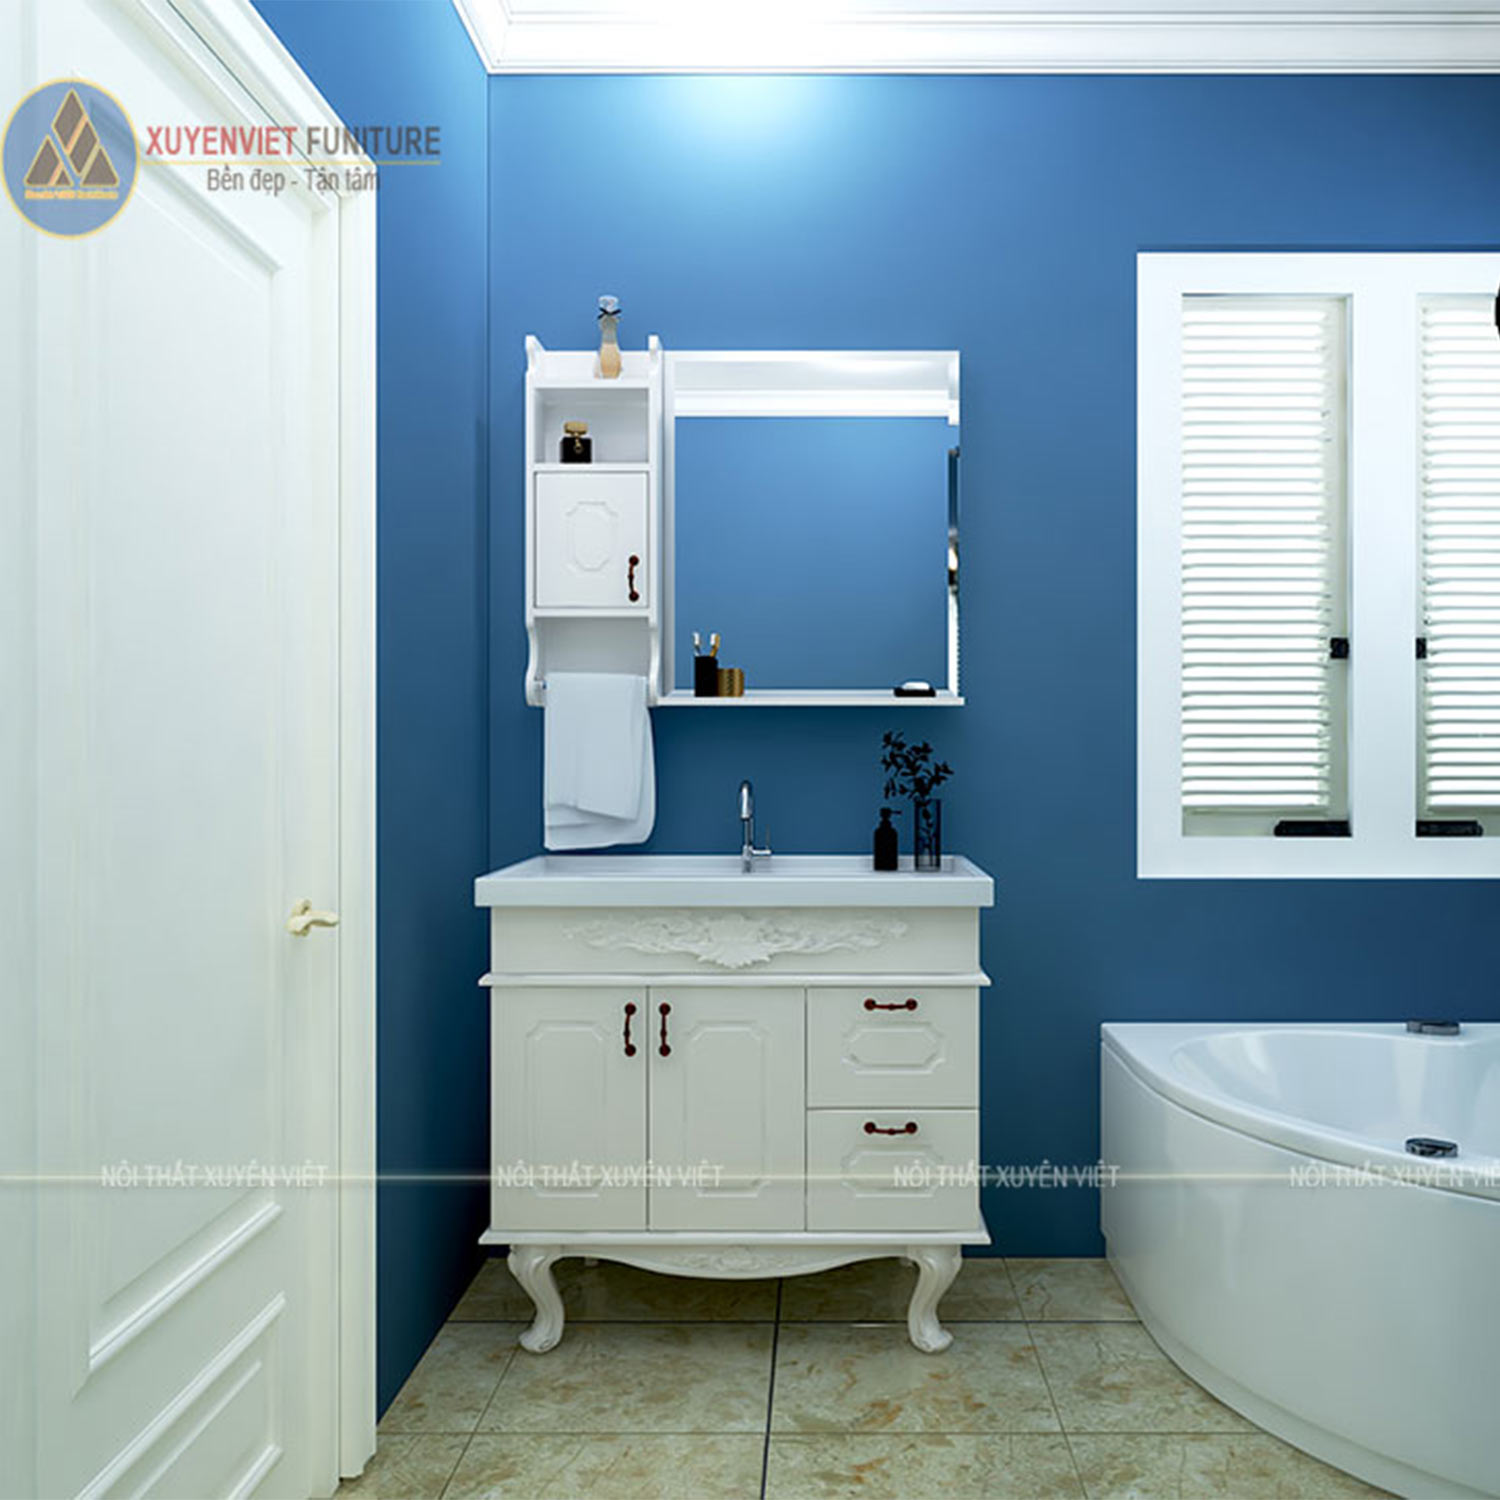 Hình ảnh bộ tủ lavabo cổ điển có chậu liền bàn LBK2002 đẳng cấp sang trọng trong không gian phòng tắm